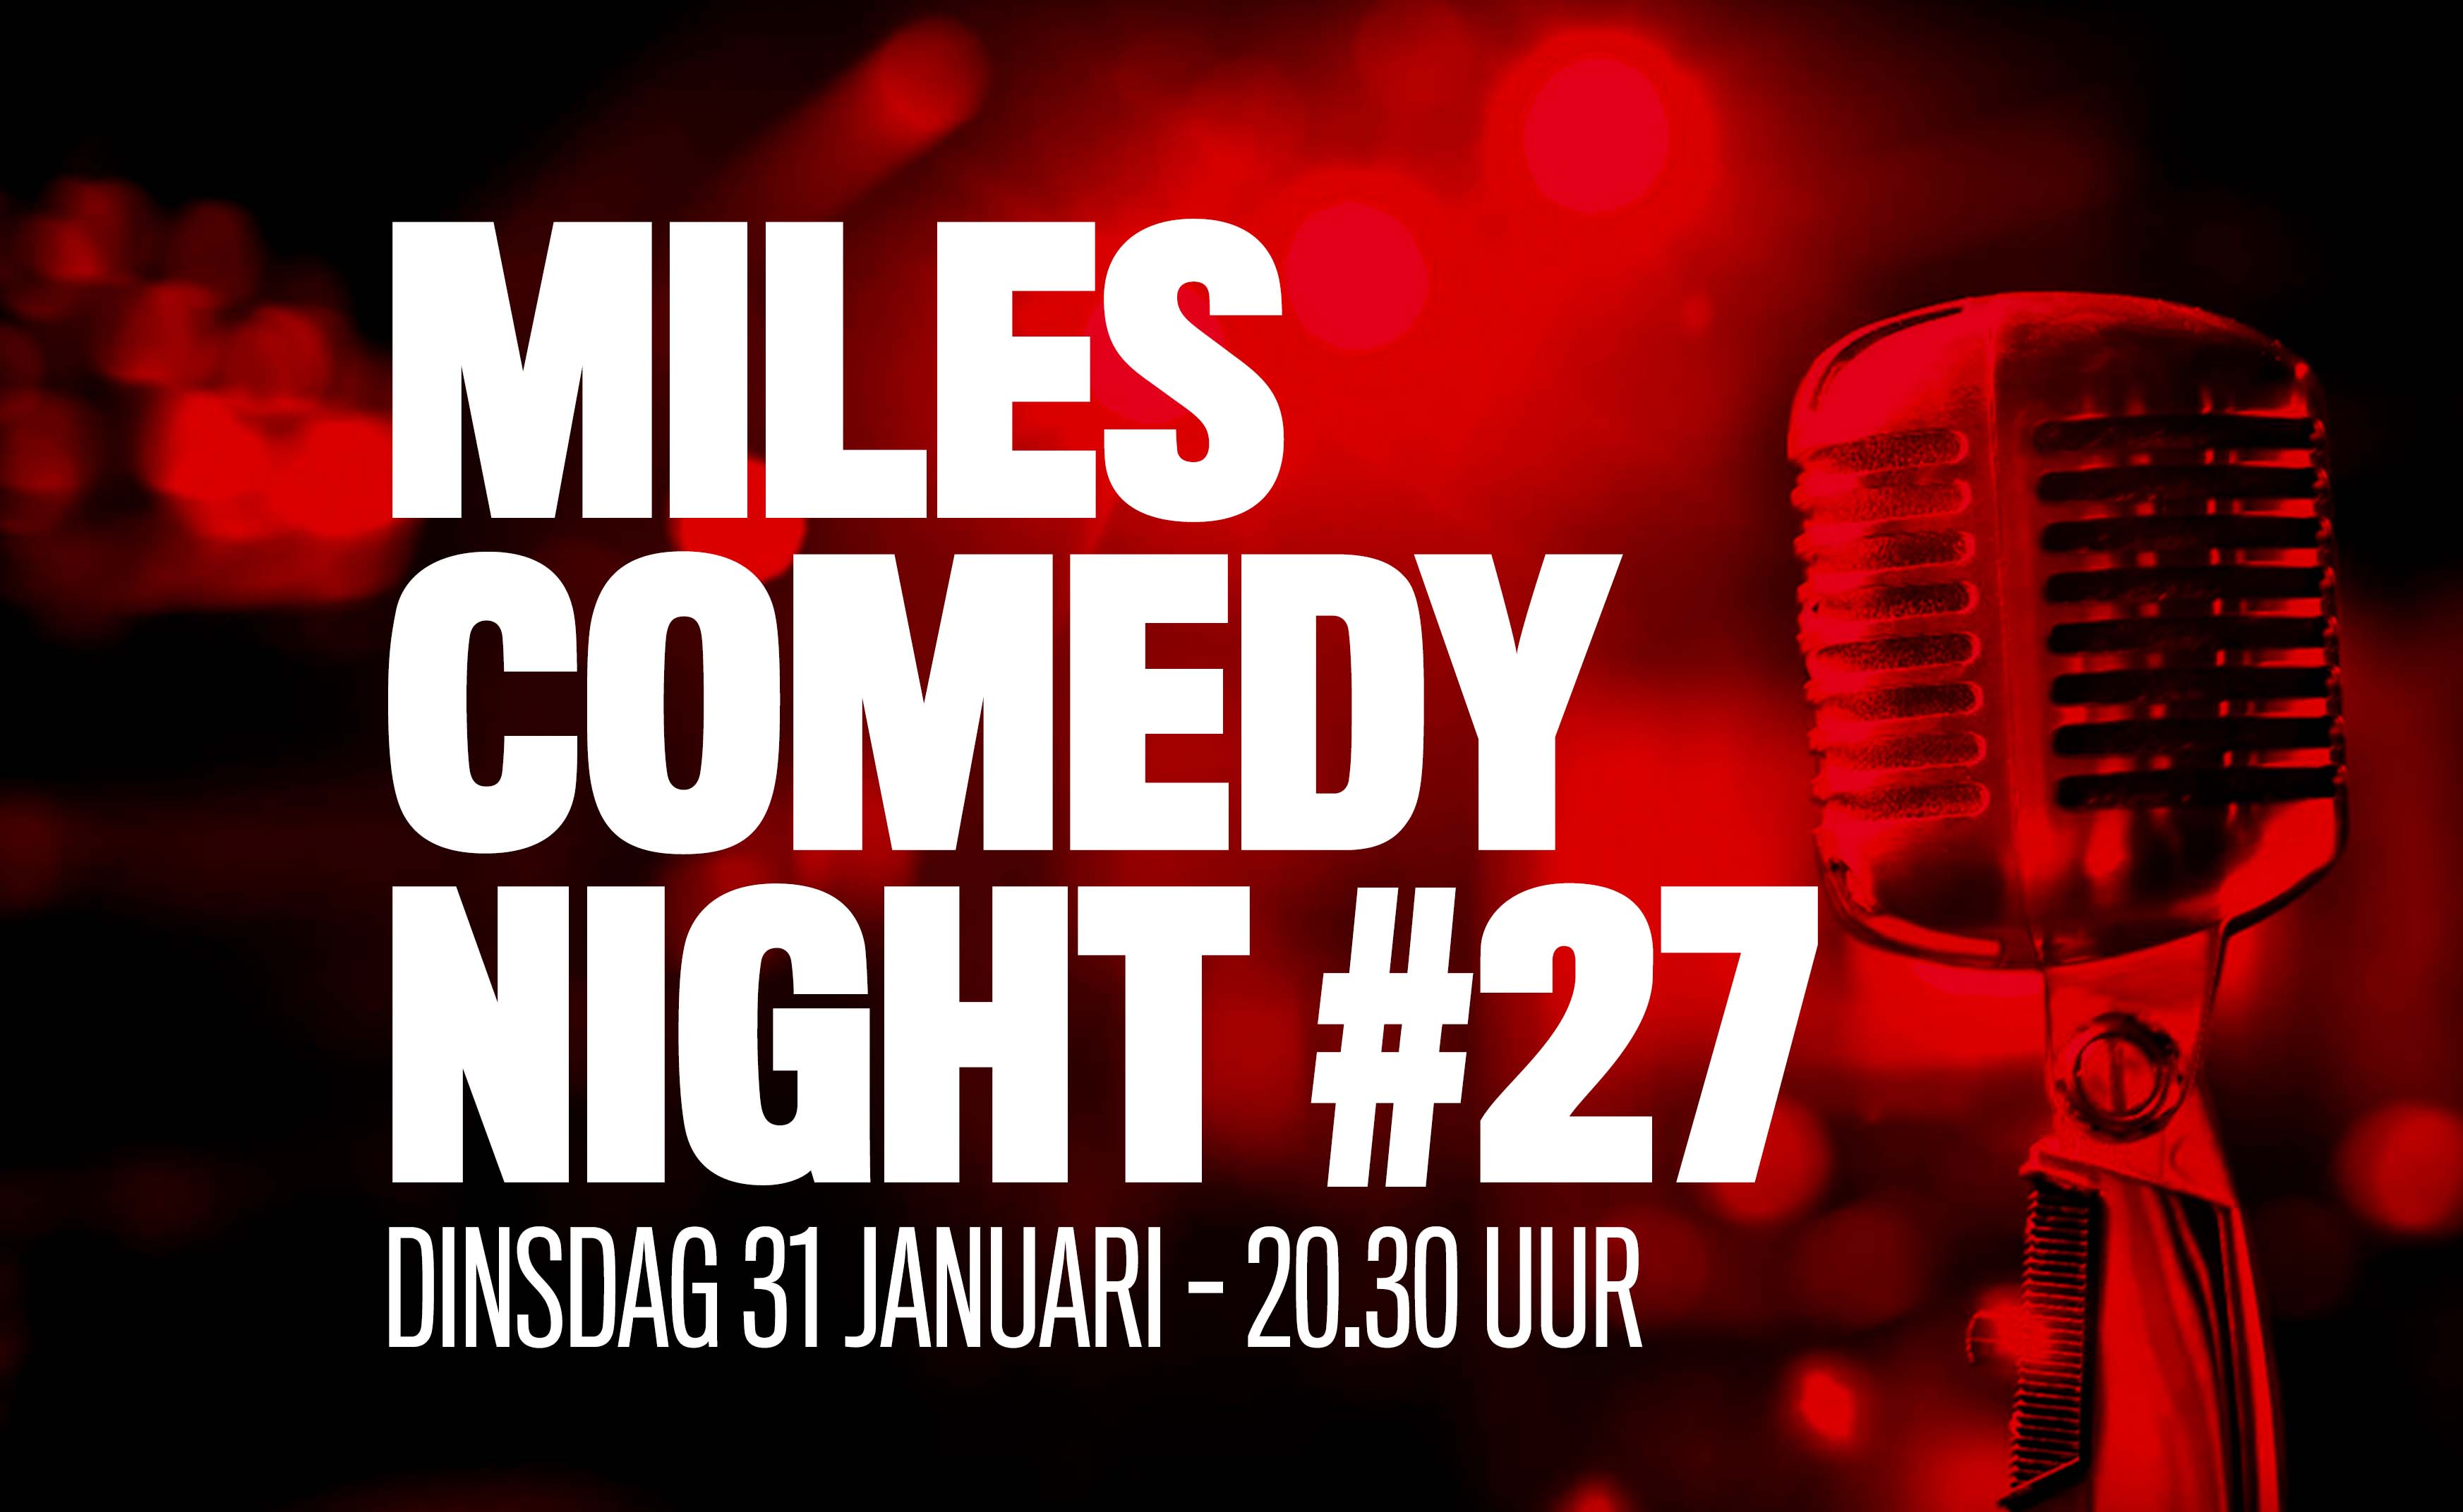 Ticket kopen voor evenement Miles Comedy Night #27